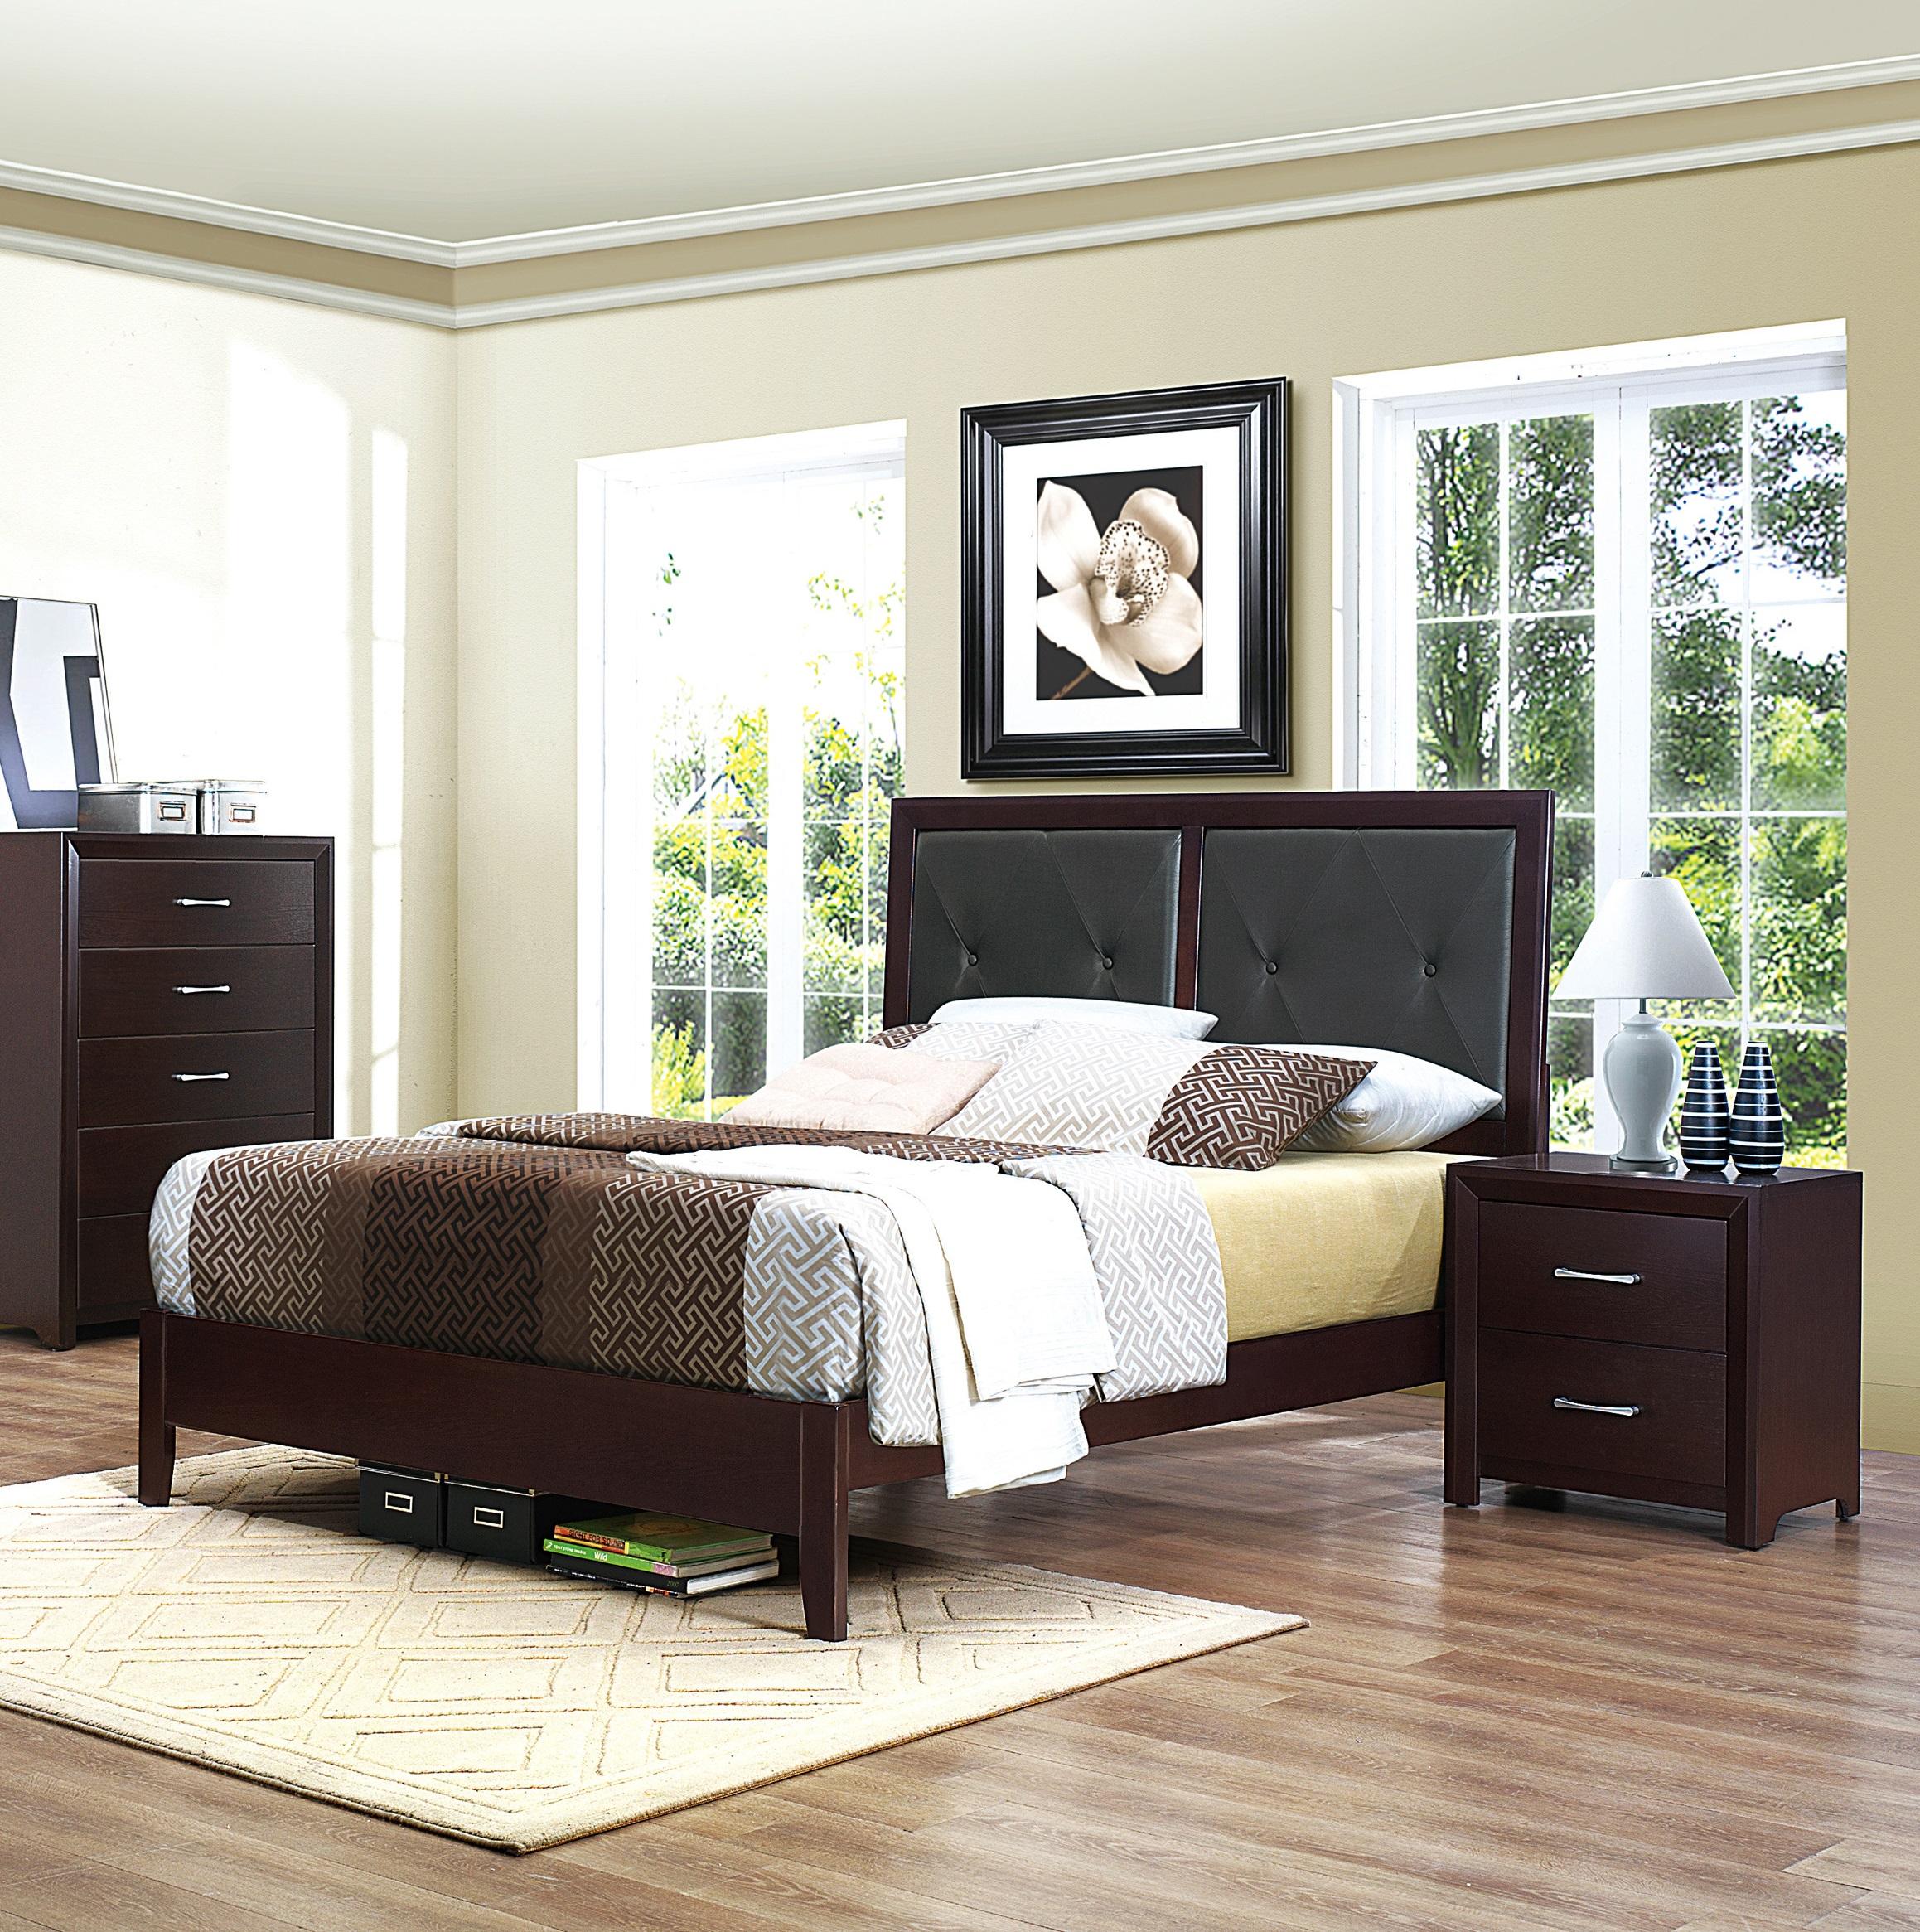 

    
Contemporary Espresso Wood Queen Bedroom Set 3pcs Homelegance 2145-1* Edina
